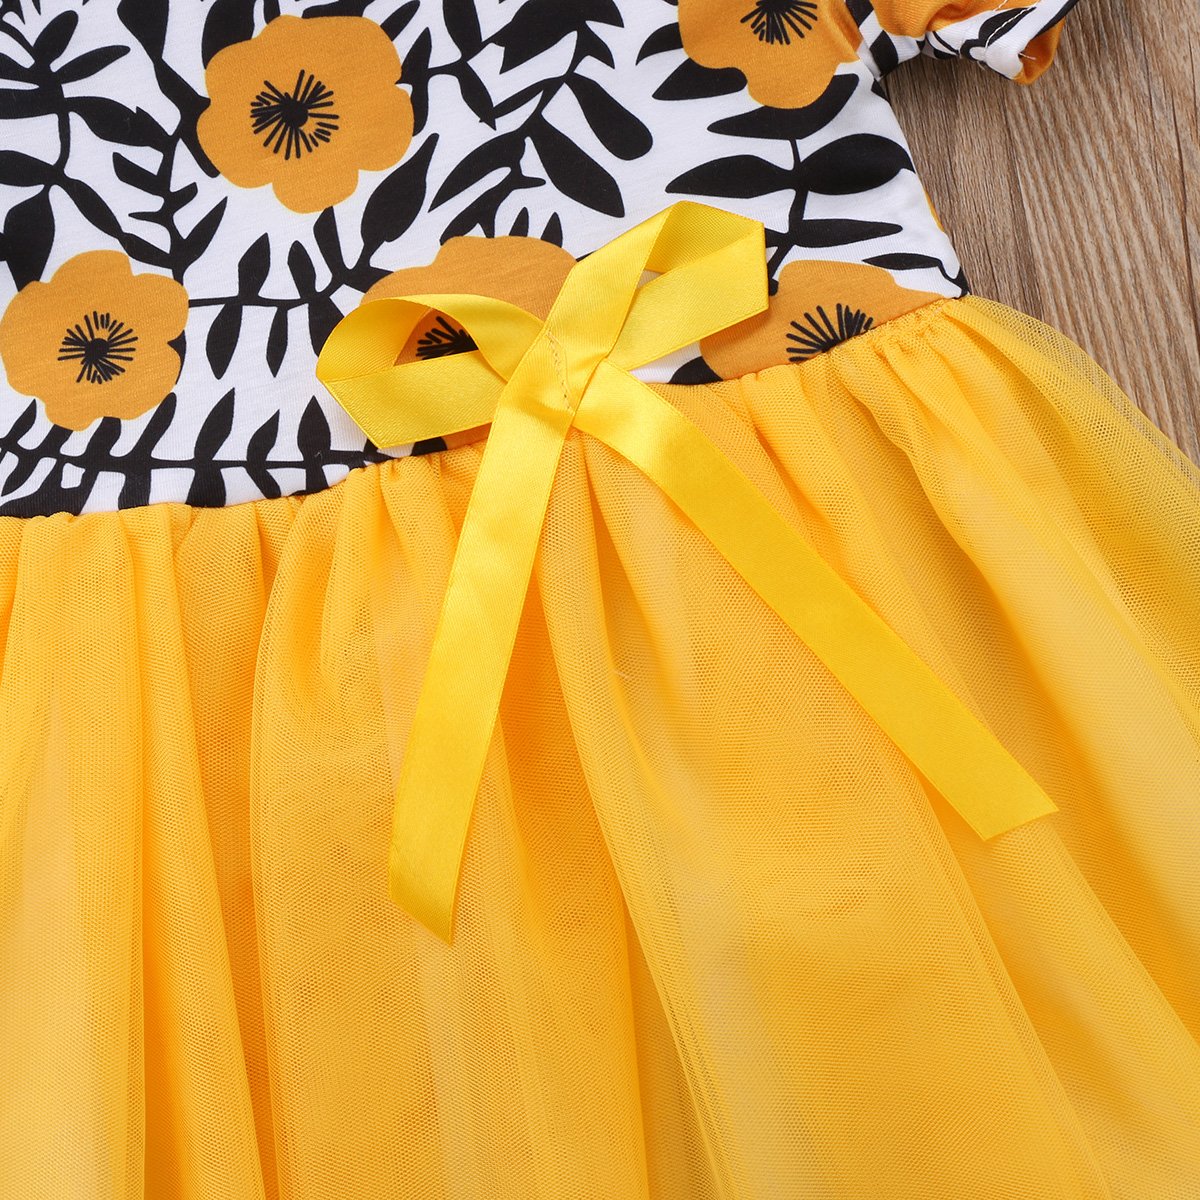 Girl Baby Girls Dress Yellow Flowers